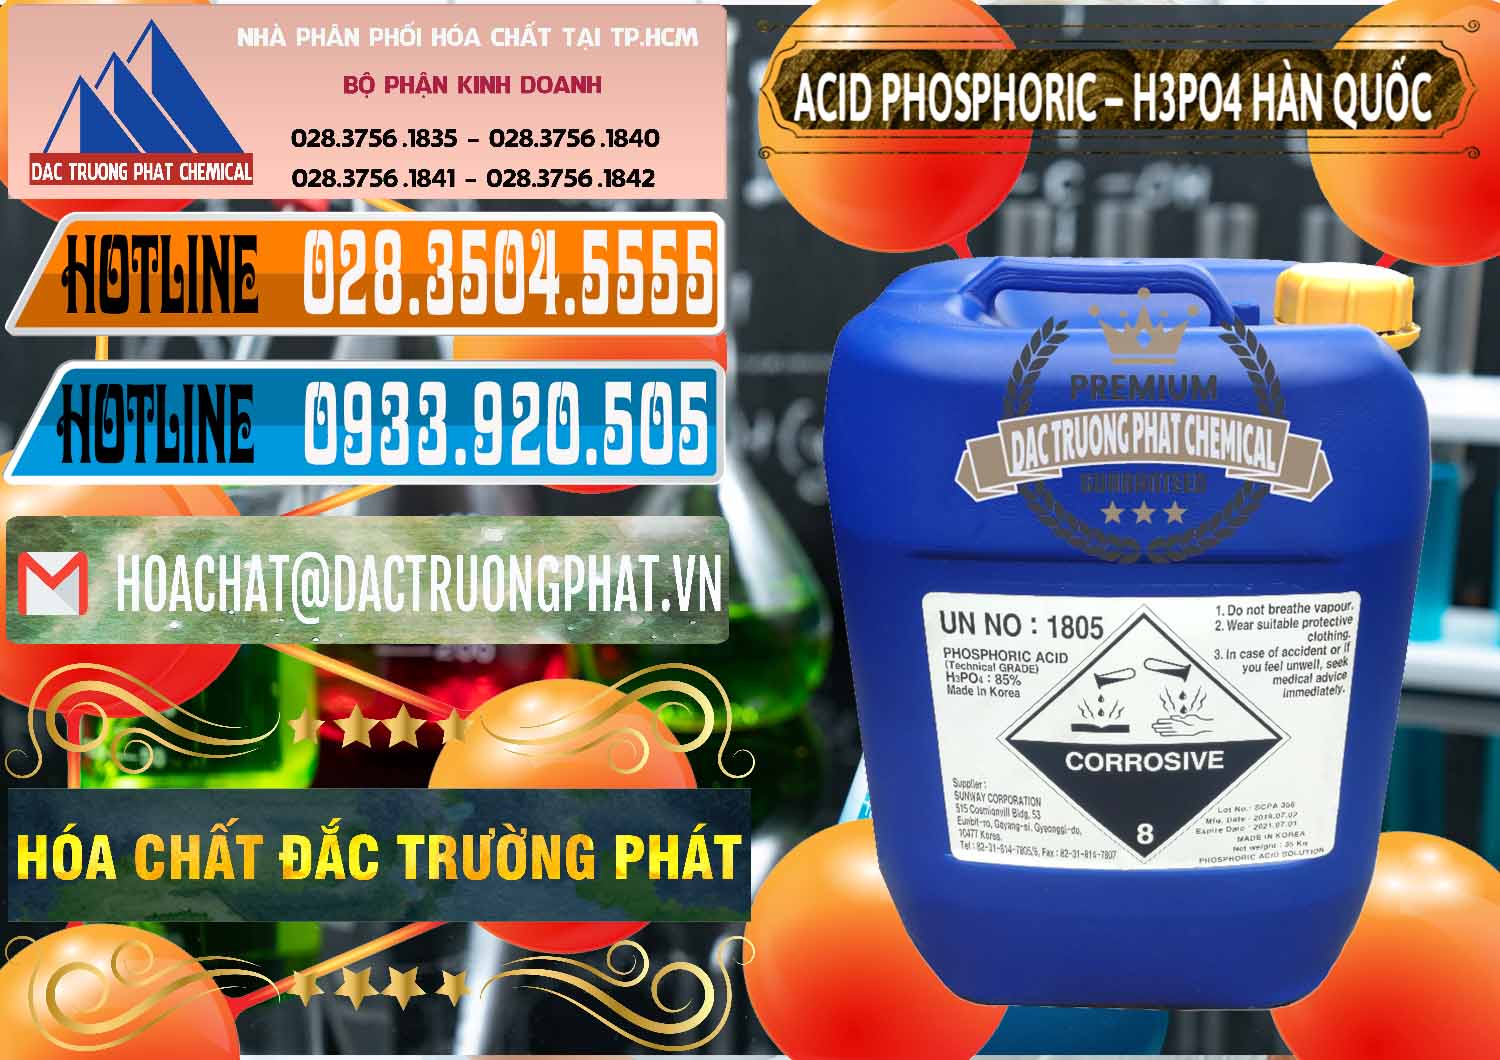 Công ty chuyên bán ( cung ứng ) Acid Phosphoric – H3PO4 85% Can Xanh Hàn Quốc Korea - 0016 - Nơi chuyên phân phối ( bán ) hóa chất tại TP.HCM - stmp.net